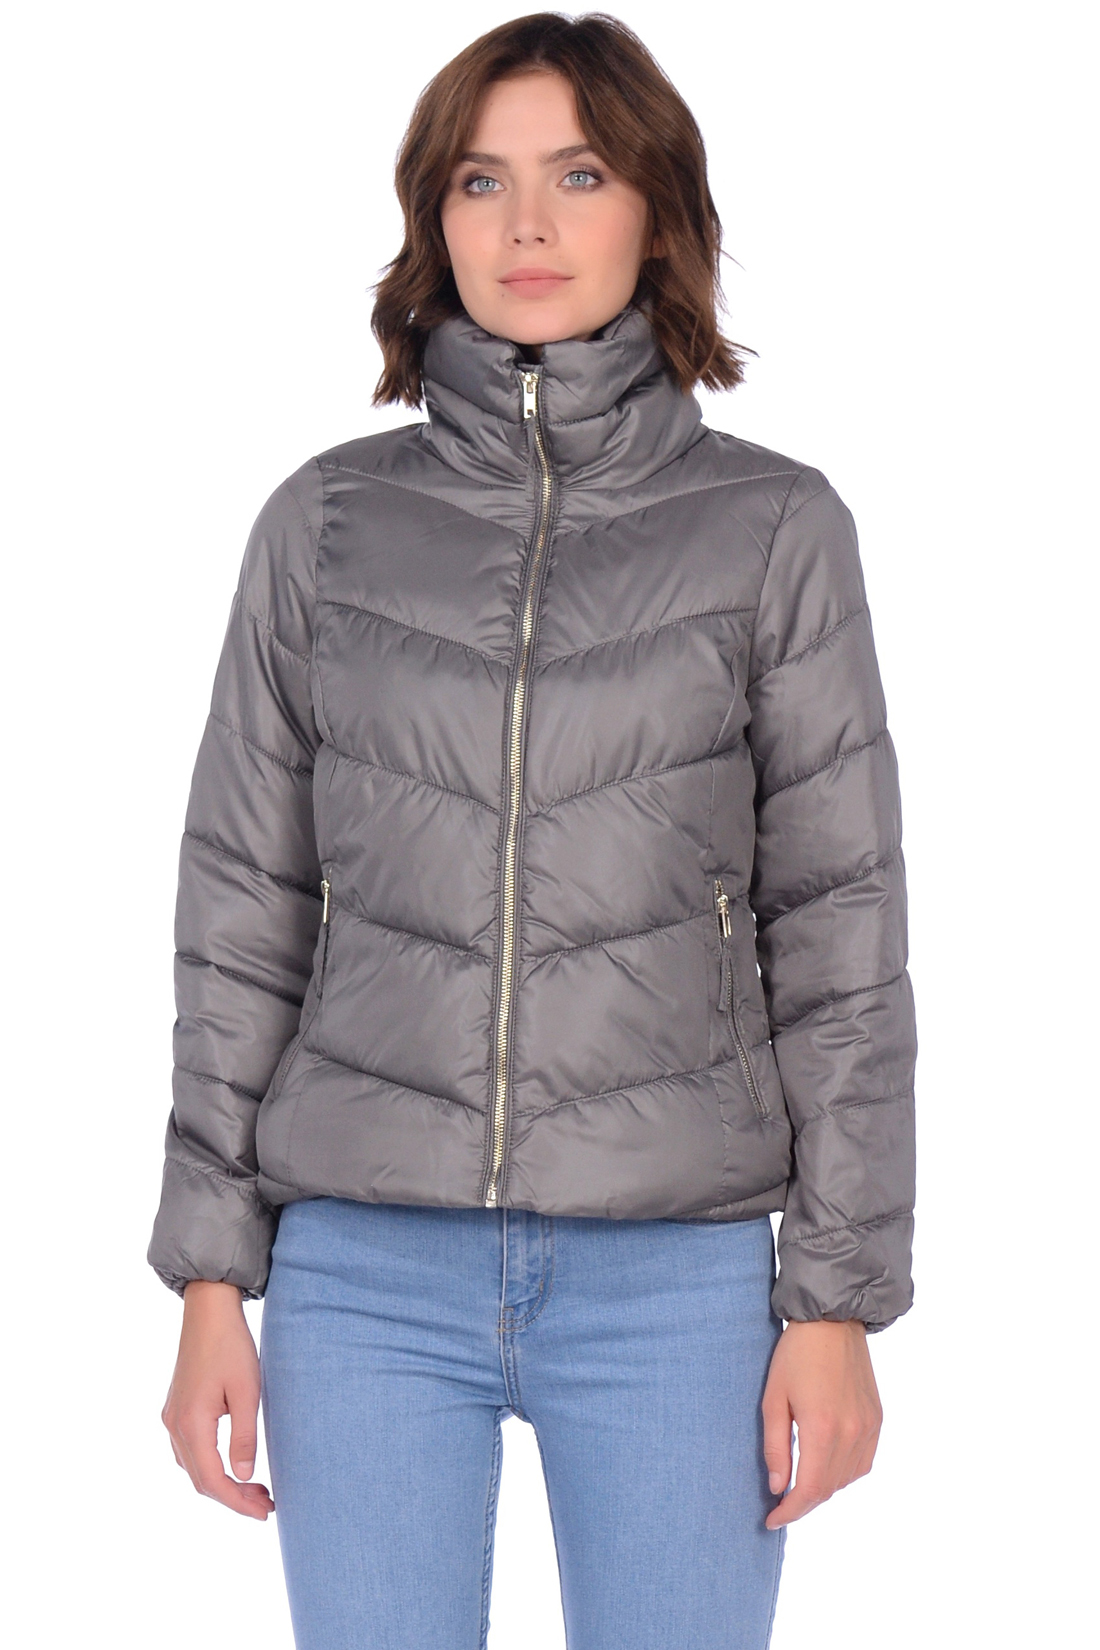 Укороченная дутая куртка (арт. baon B039561), размер XL, цвет серый Укороченная дутая куртка (арт. baon B039561) - фото 5